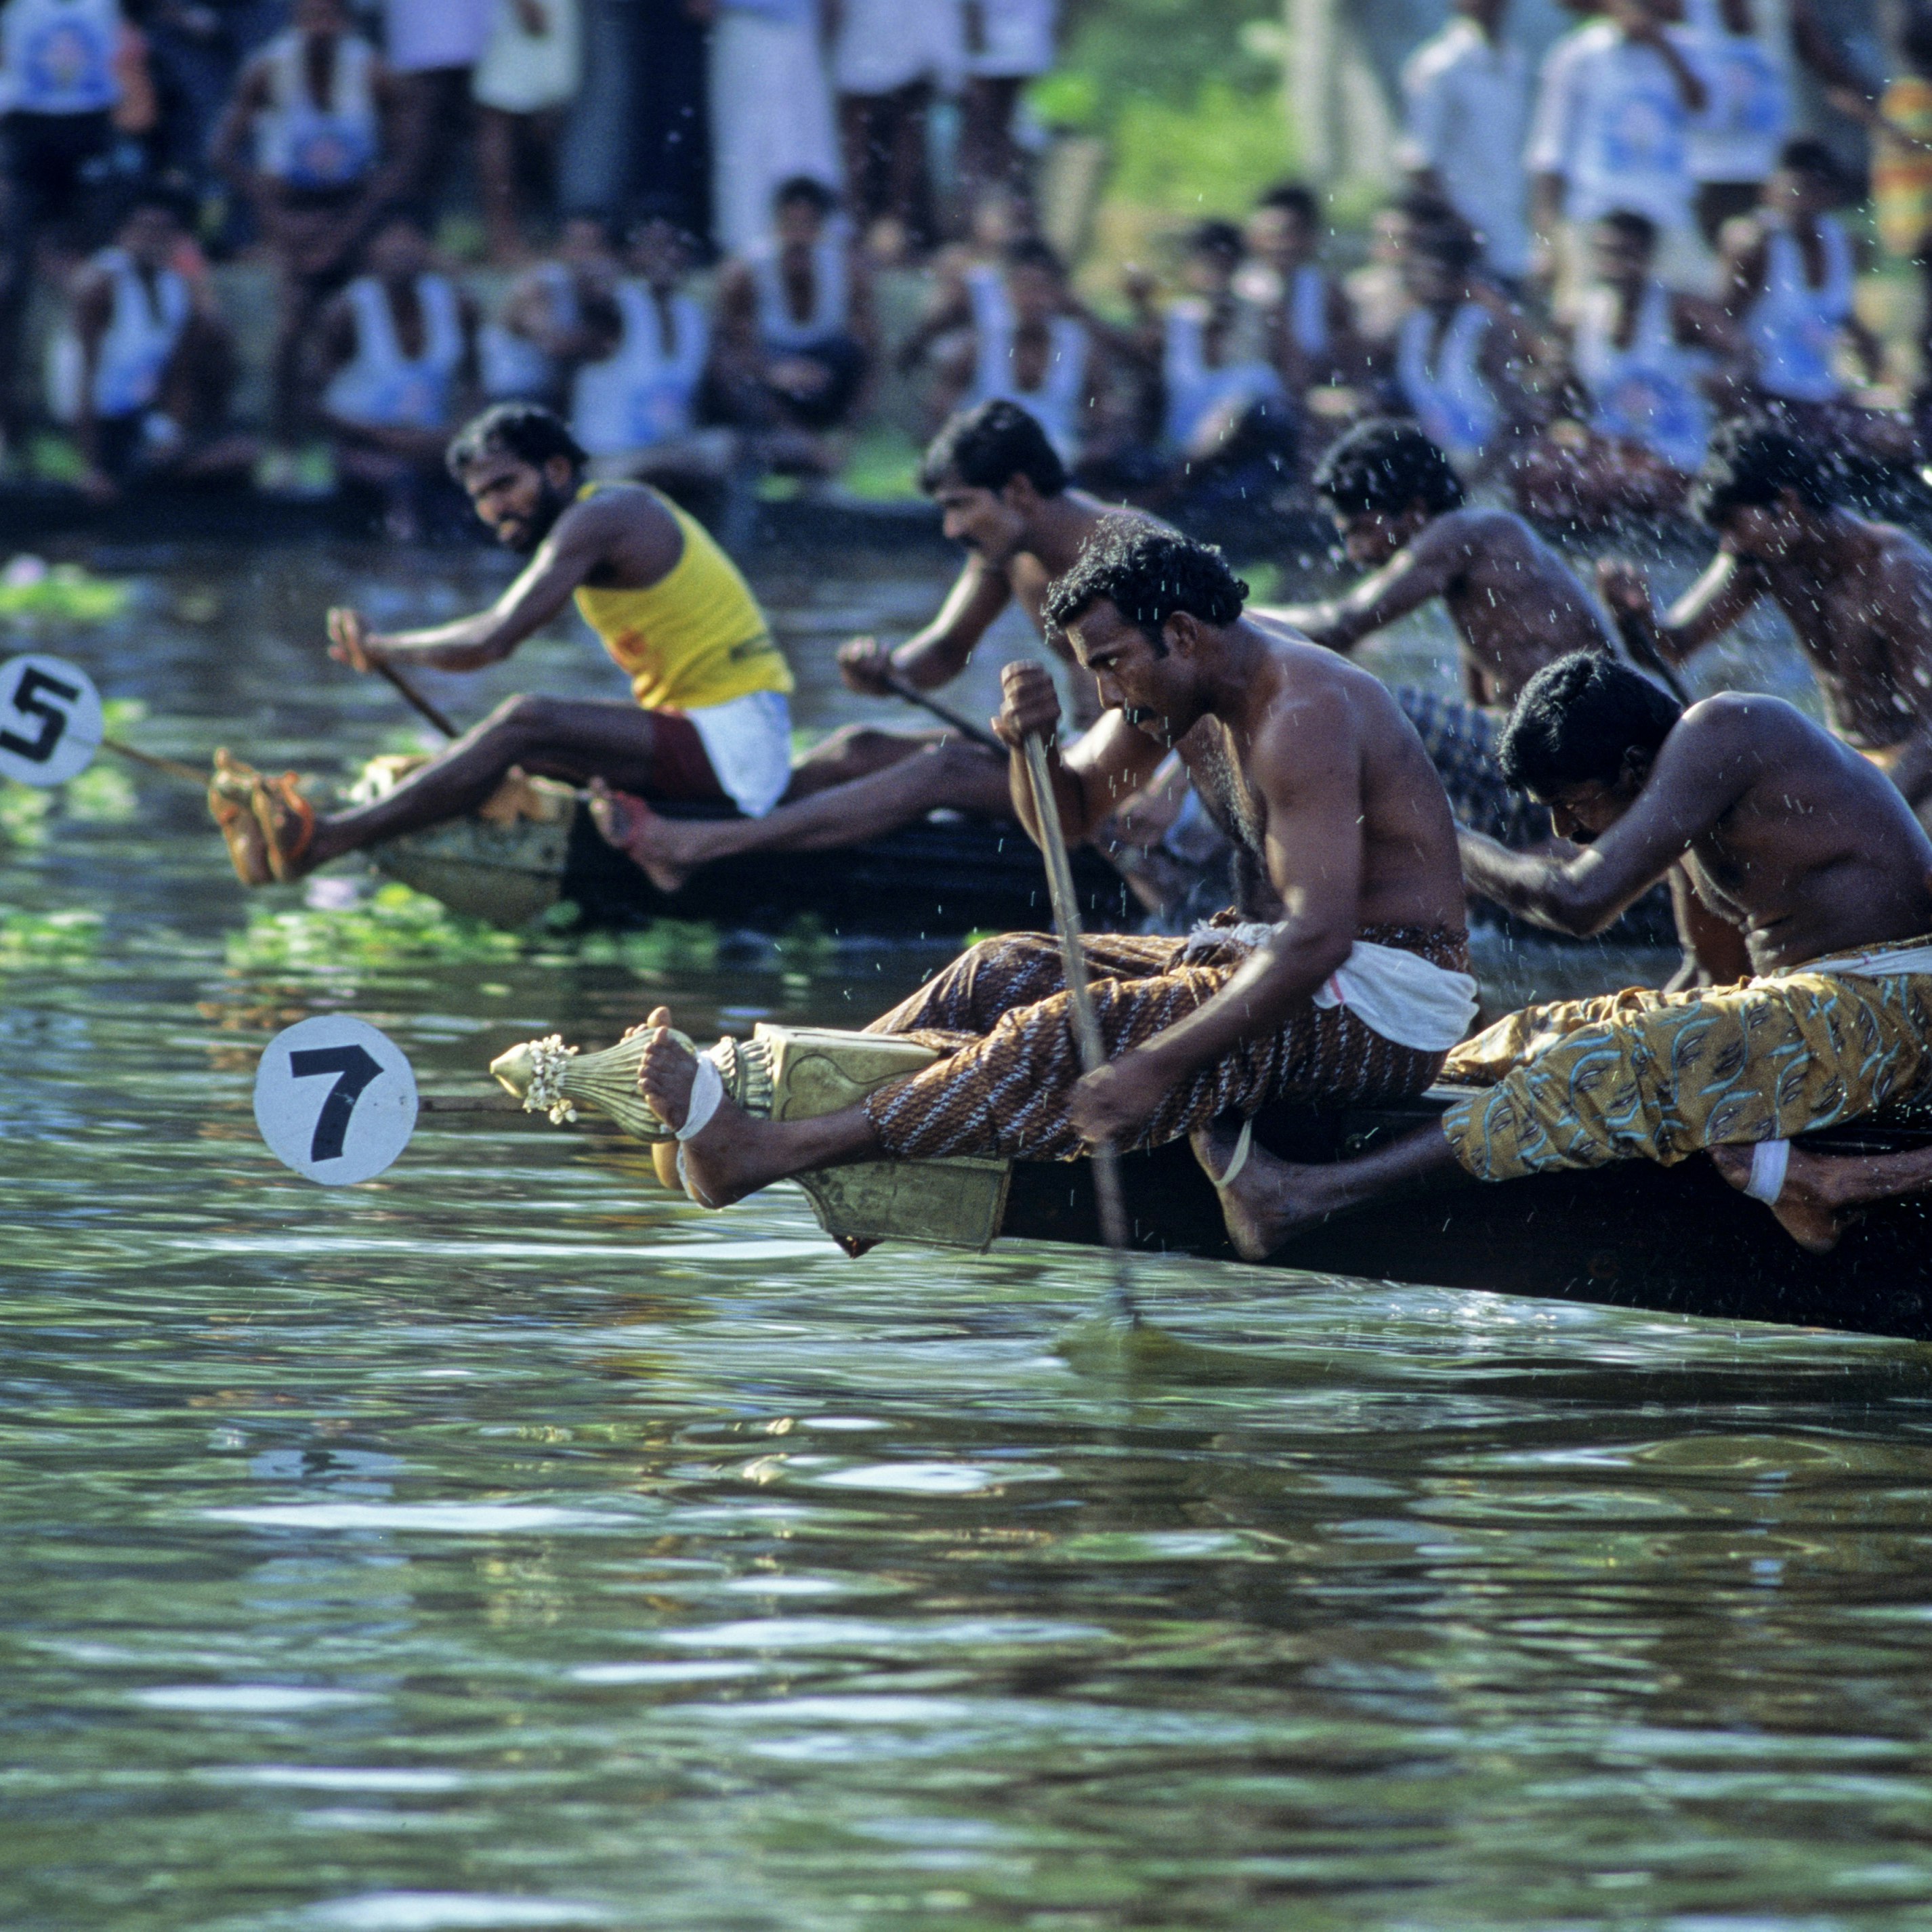 Boat_races_Kerala.jpg